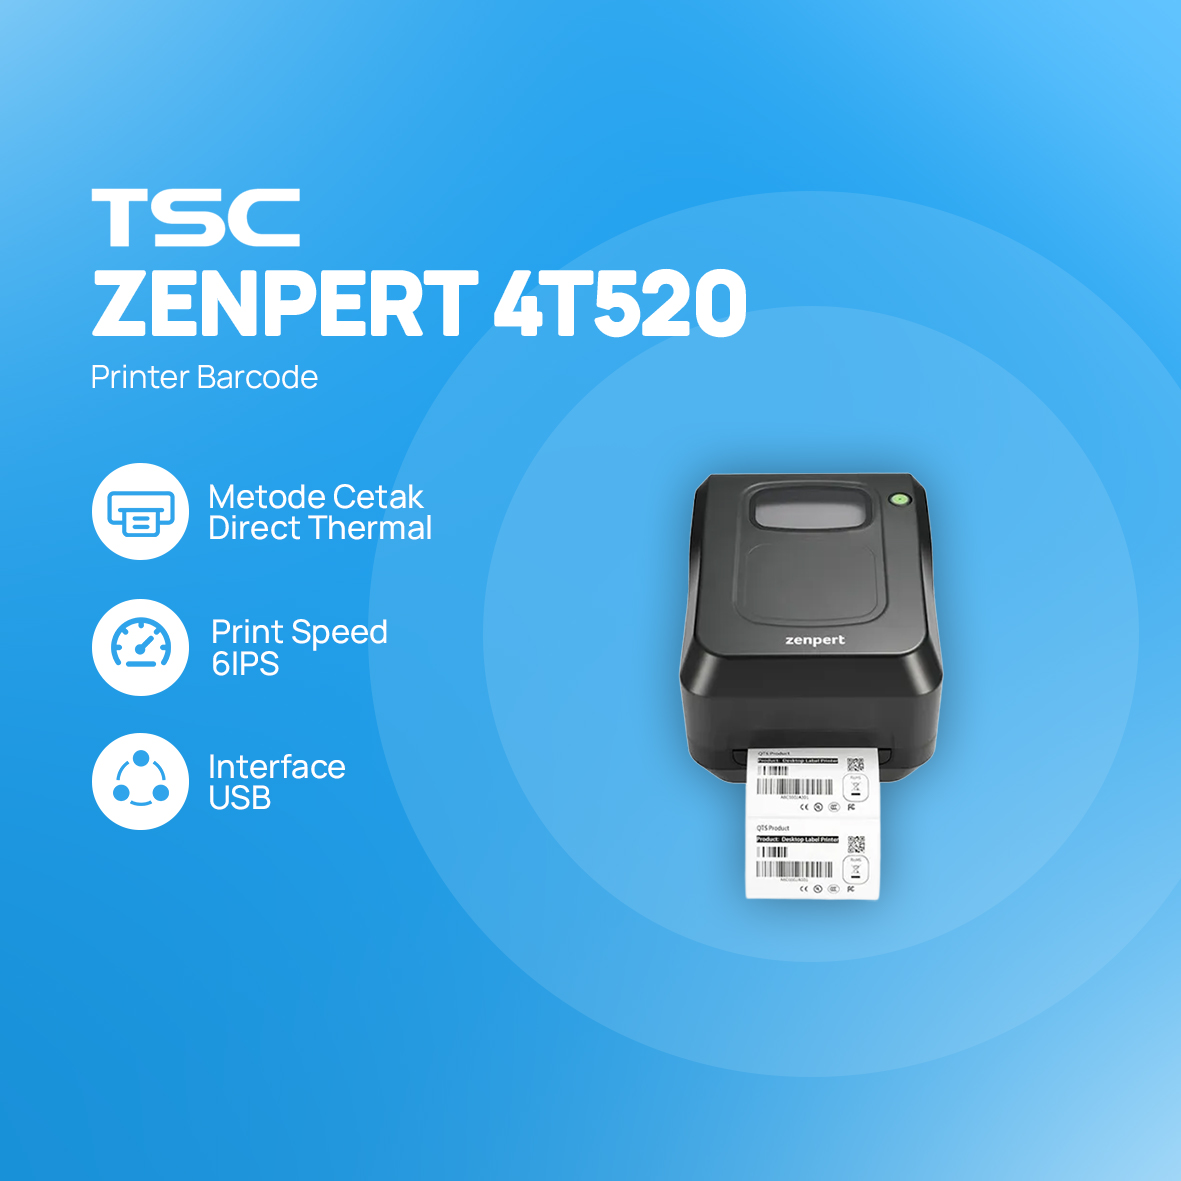 Printer barcode TSC ZENPERT 4T520